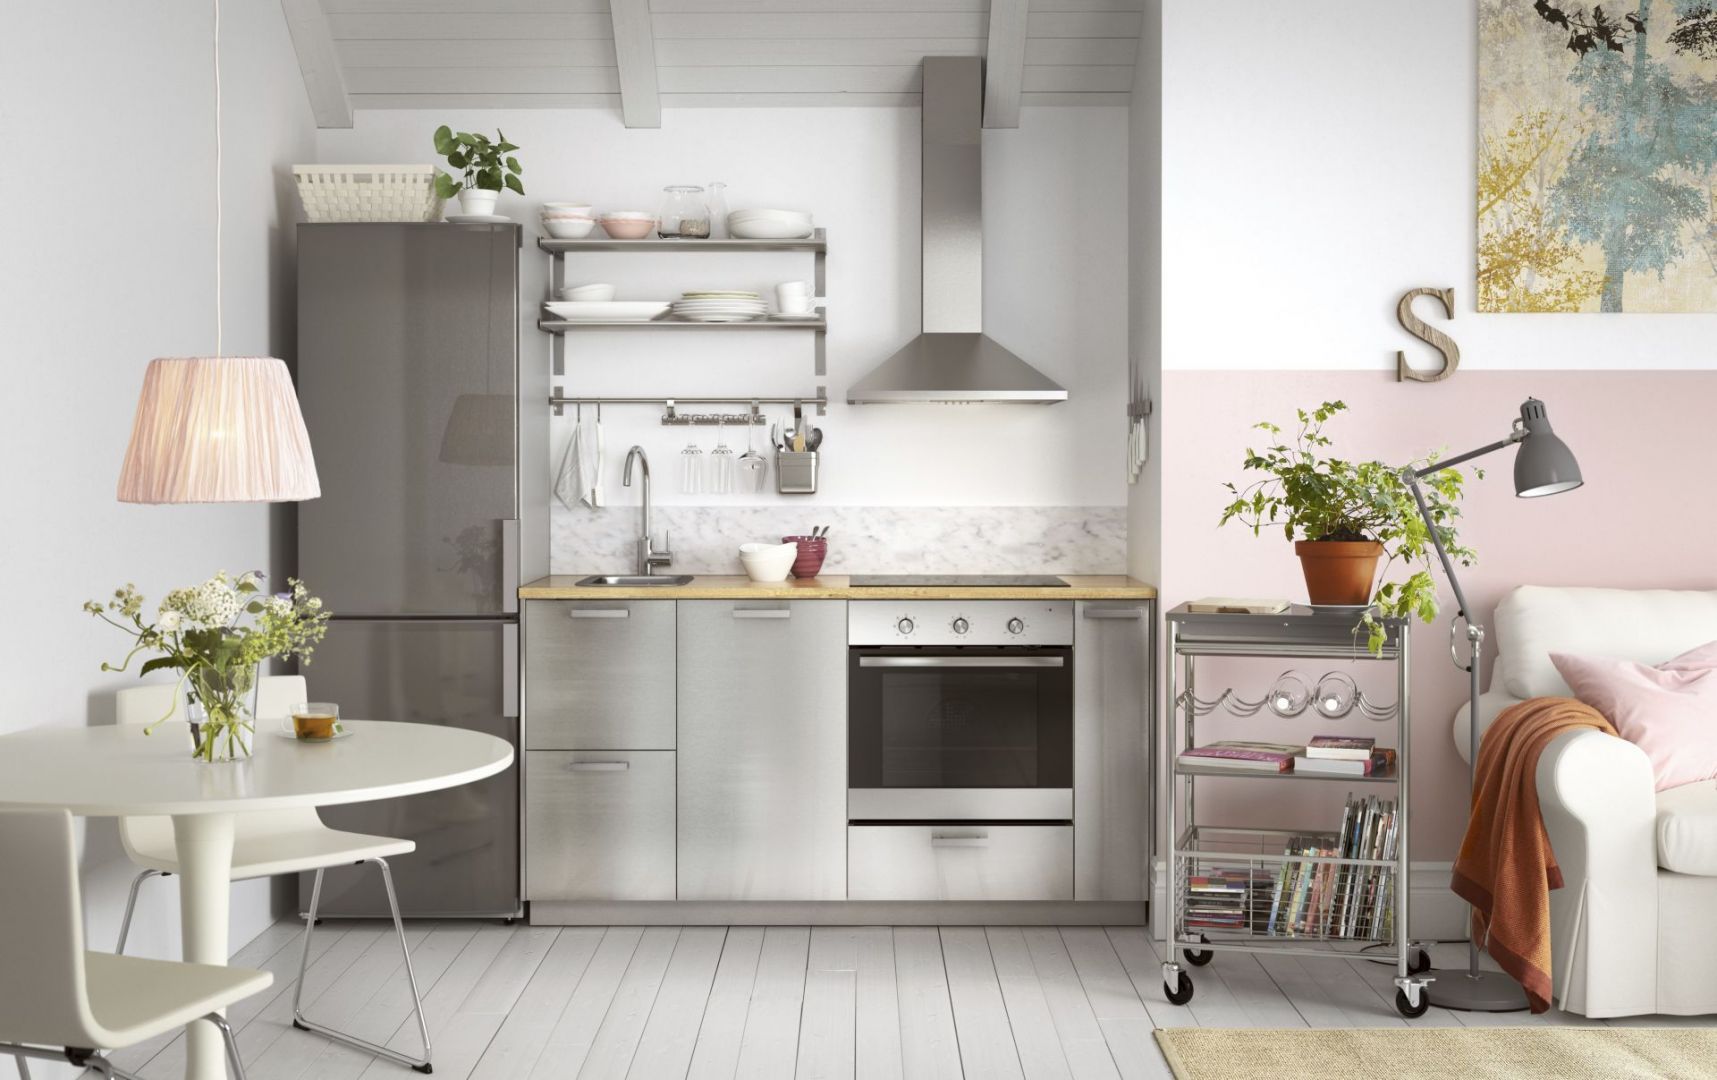 Otwarta kuchnia sprawdzi się szczególnie w małych mieszkaniach. Zlikwidowanie ściany dzielącej kuchnię z salonem, znacznie powiększy przestrzeń. Fot. IKEA